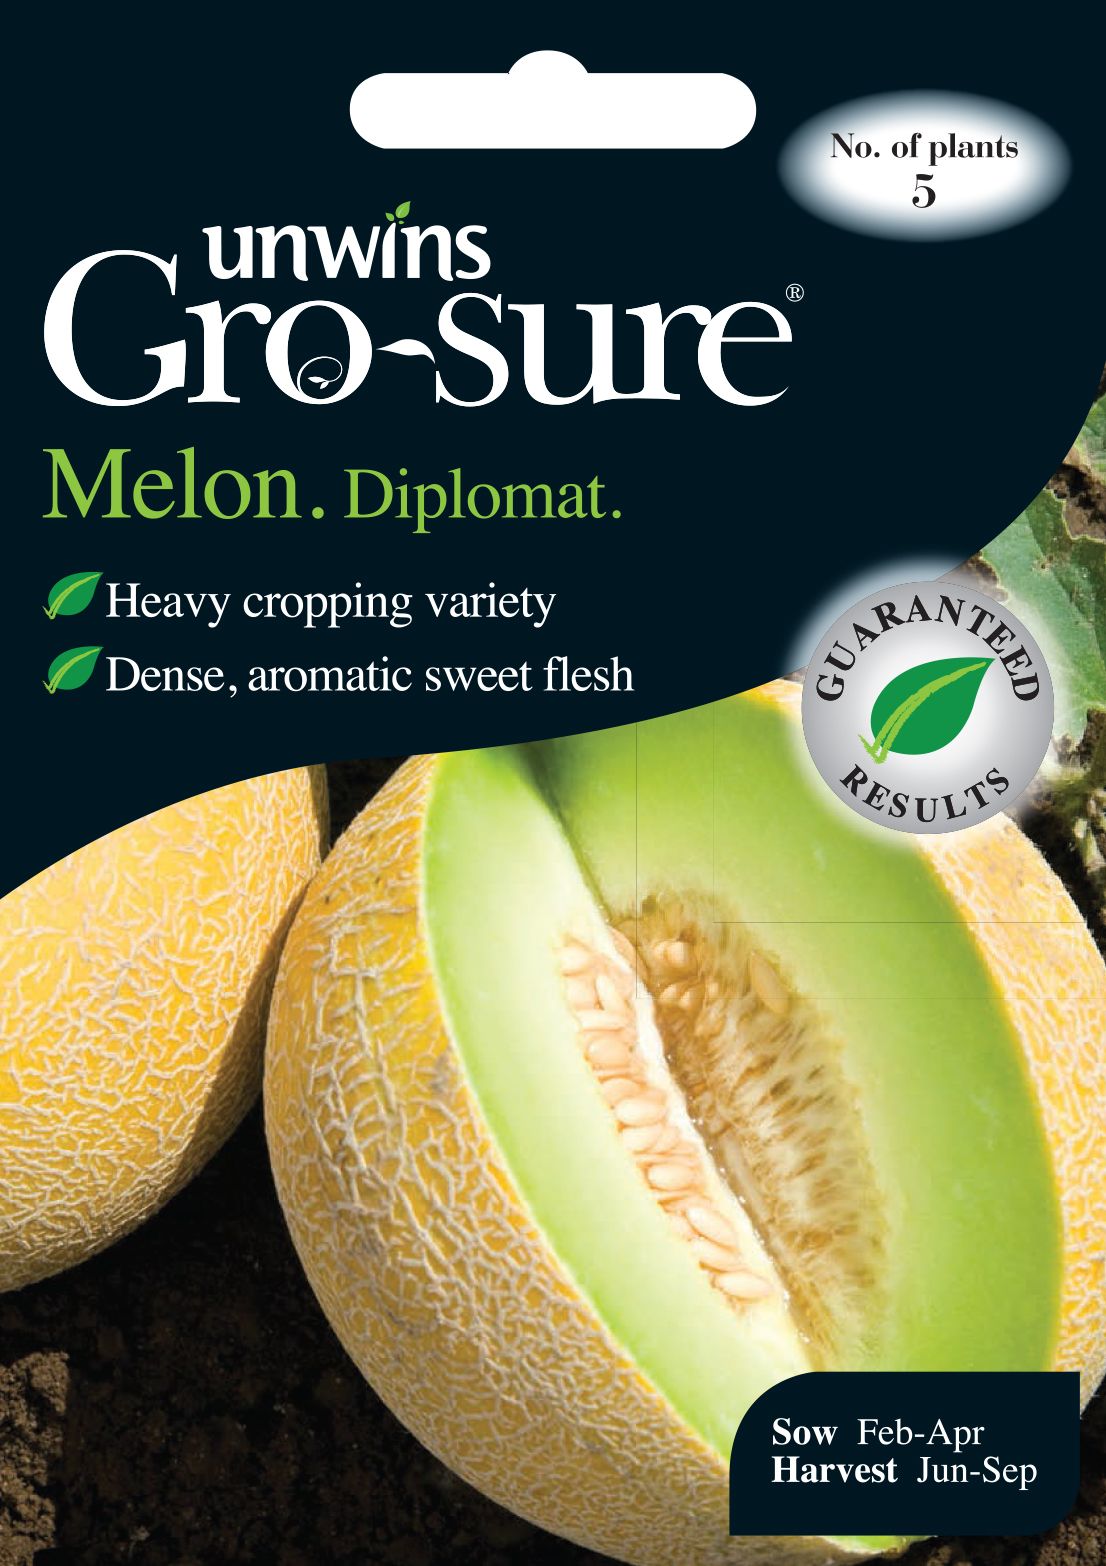 Melon Diplomat